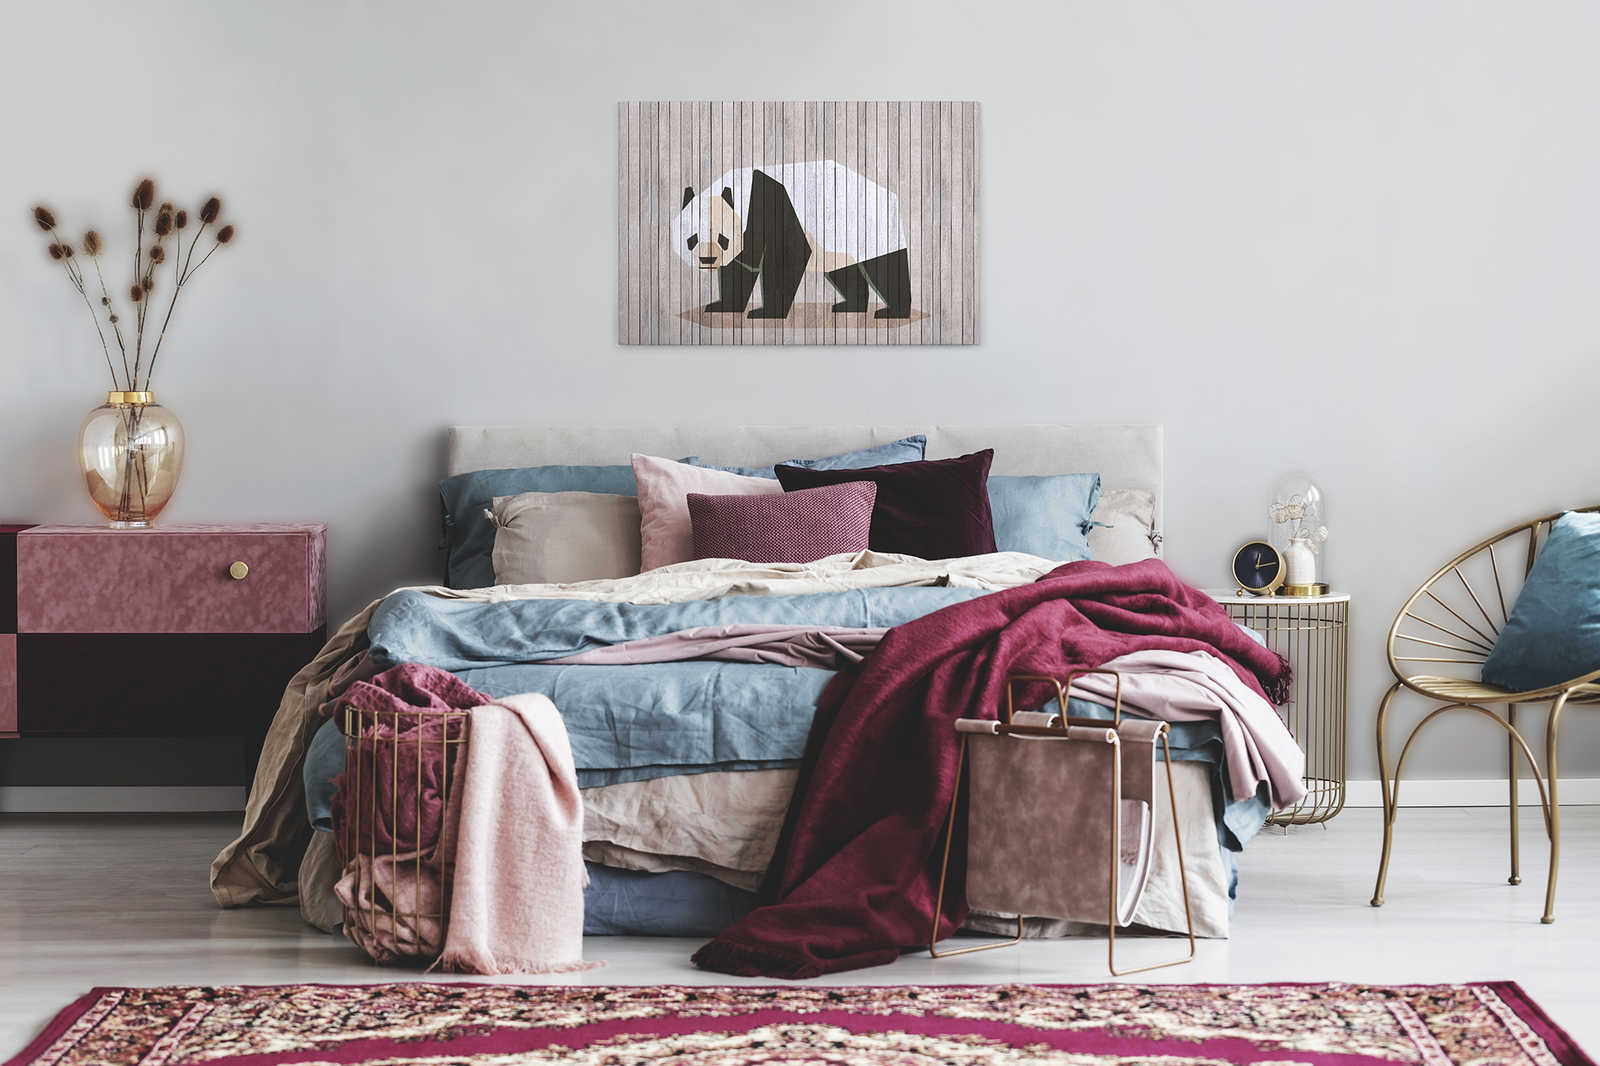             Born to Be Wild 2 - toile sur panneau de bois structure avec panda & mur de planches - 0,90 m x 0,60 m
        